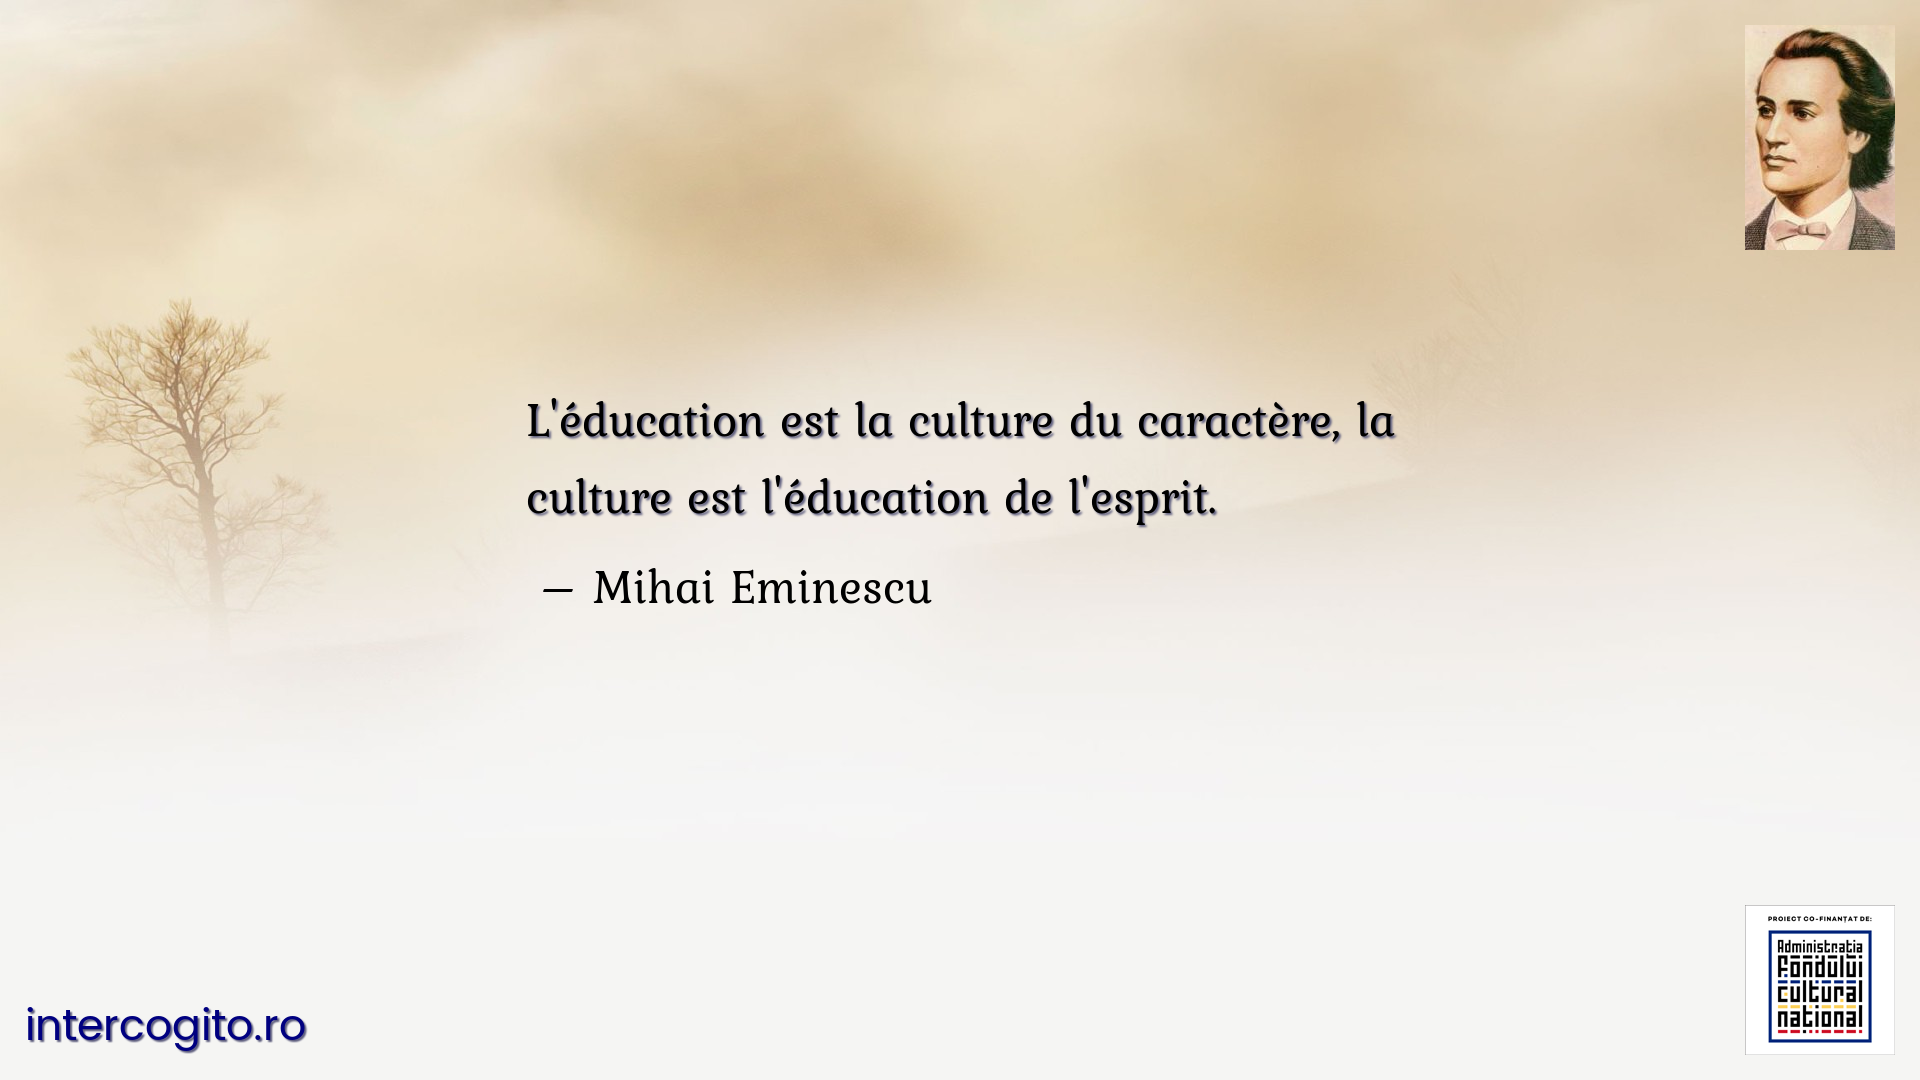 L'éducation est la culture du caractère, la culture est l'éducation de l'esprit.